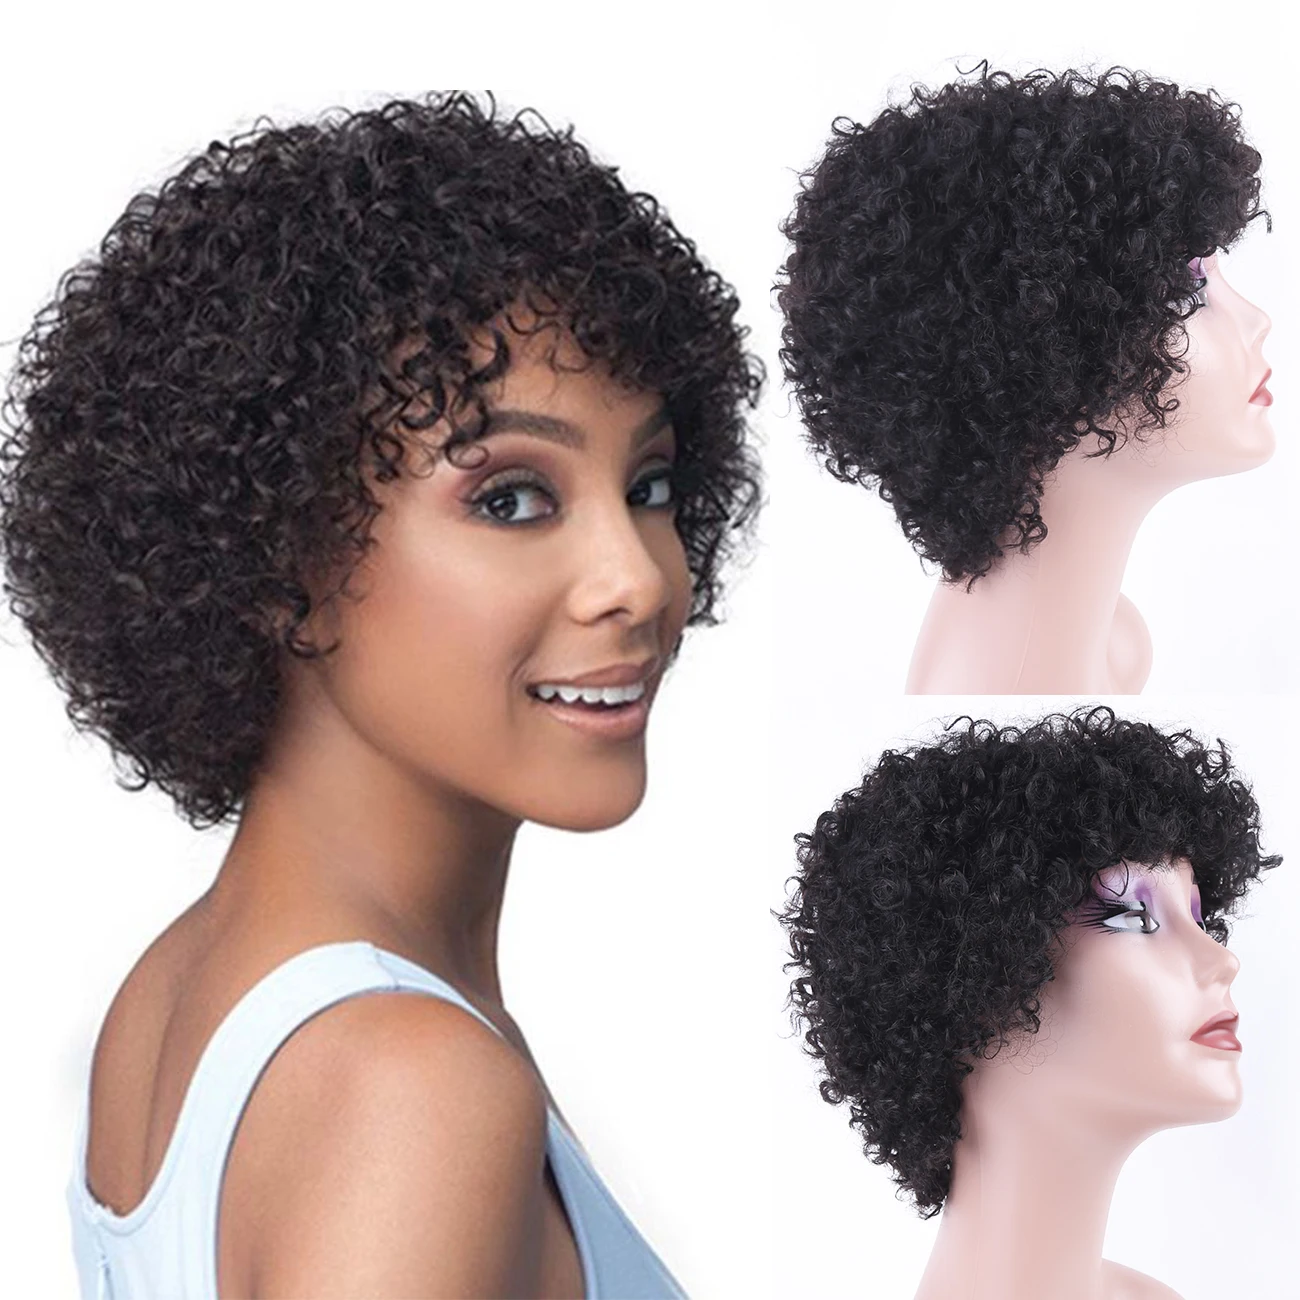 Curly Bob Wig Human Hair Short Pixie Cut Wig with Bangs Layered Human Ha... - $36.03